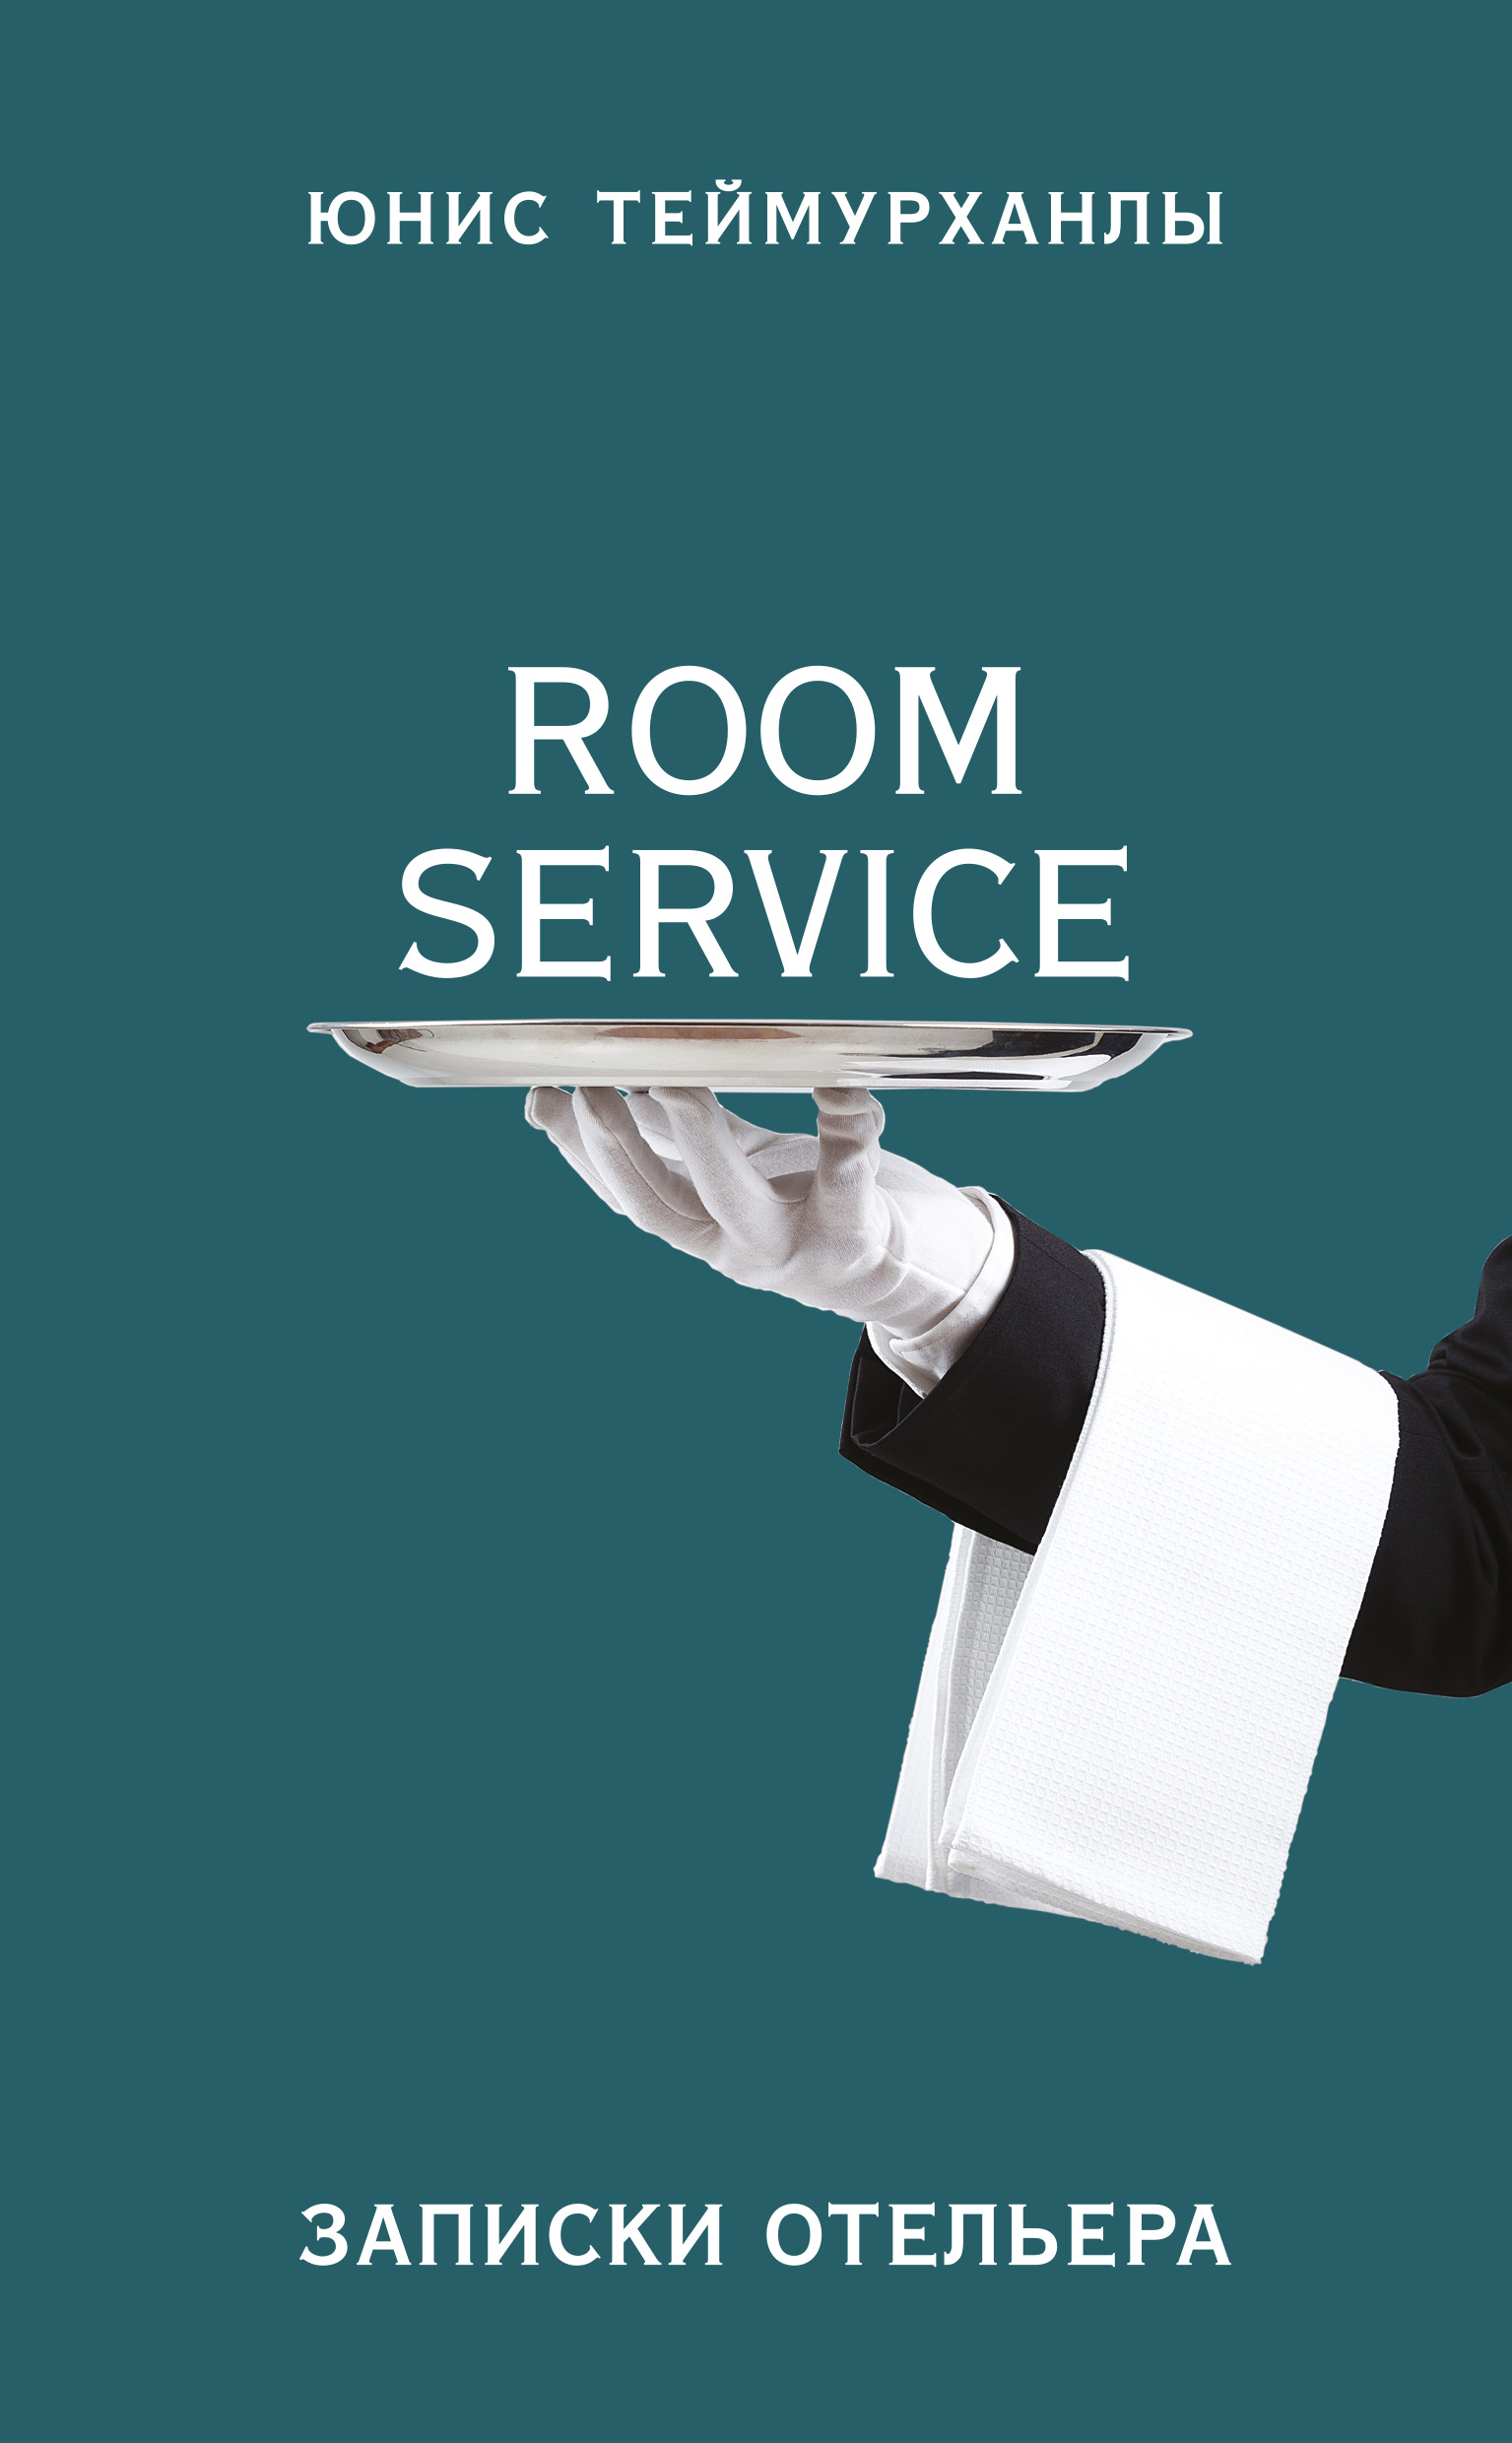 Книга «Room service». Записки отельера из серии , созданная Юнис Теймурханлы, может относится к жанру Публицистика: прочее, Биографии и Мемуары. Стоимость электронной книги «Room service». Записки отельера с идентификатором 41832892 составляет 279.00 руб.